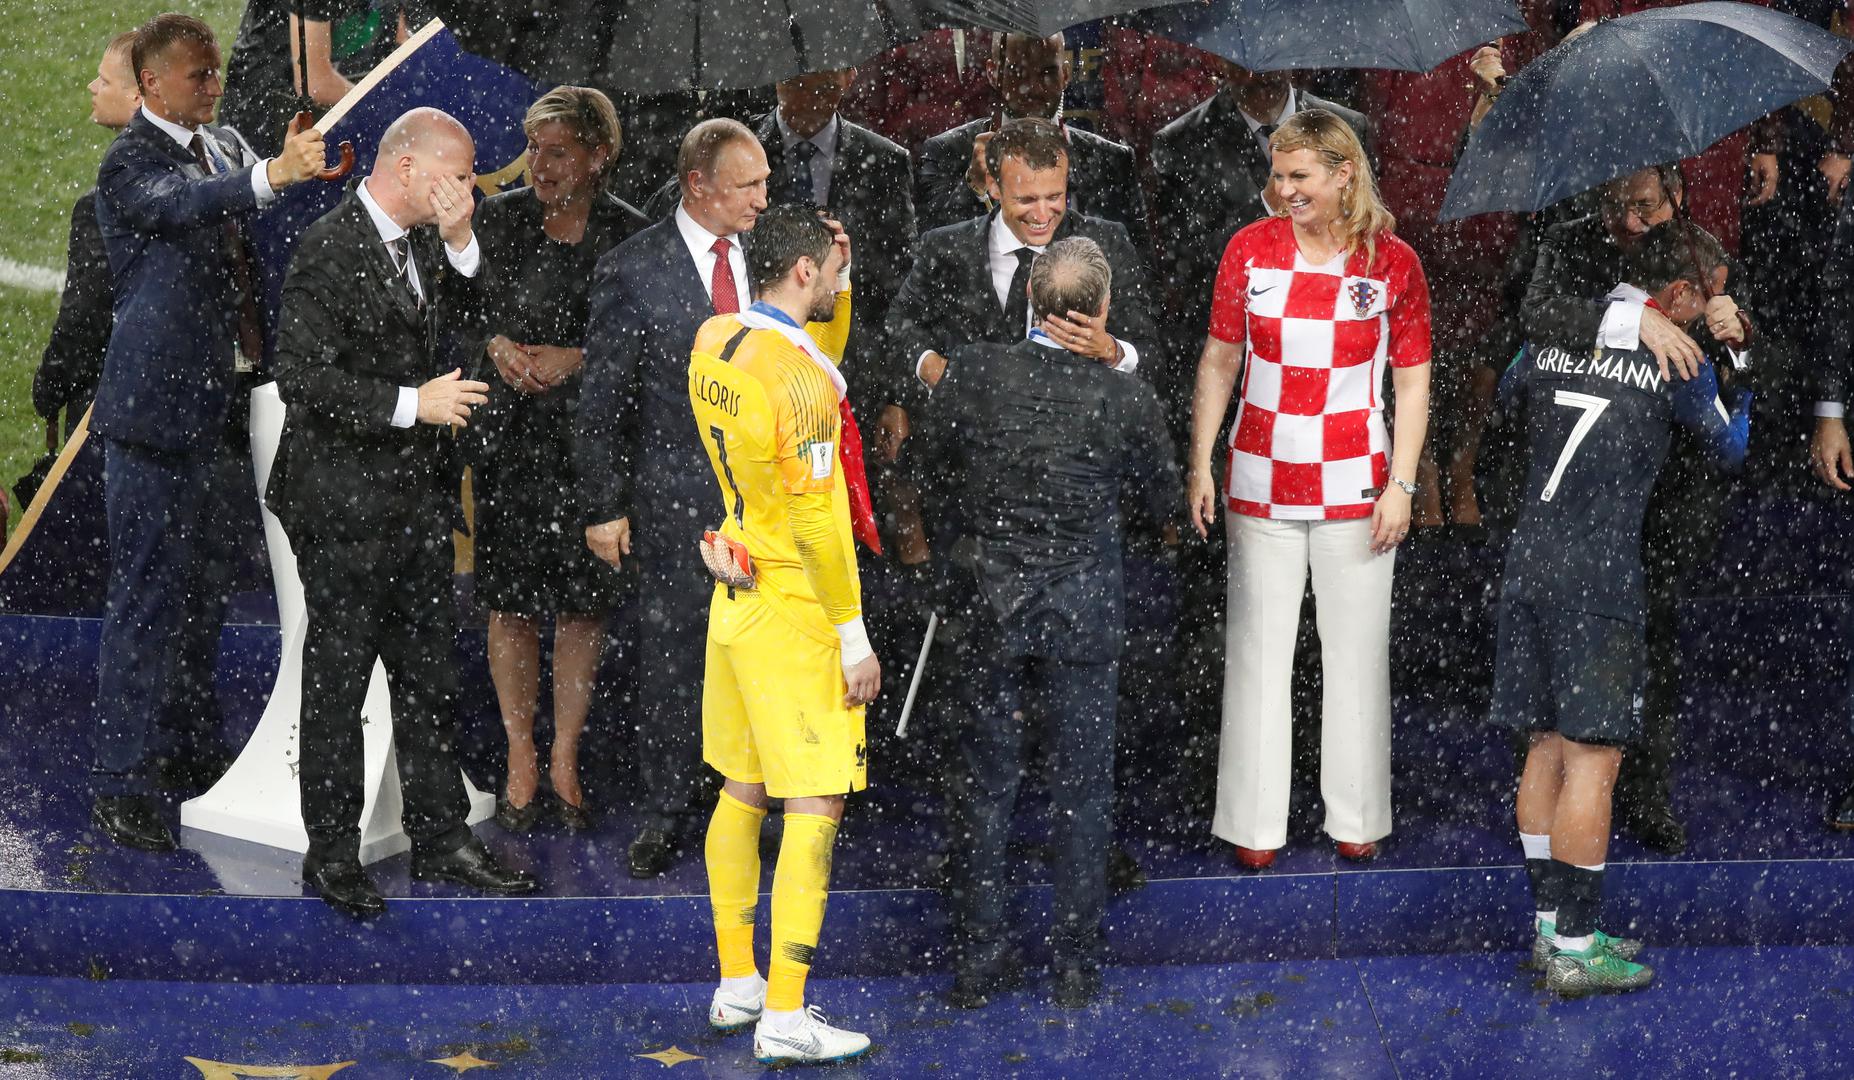 Naša predsjednica i njezin kolega Macron u tim su trenucima bili bez kišobrana i vrlo brzo su bili skroz mokri.